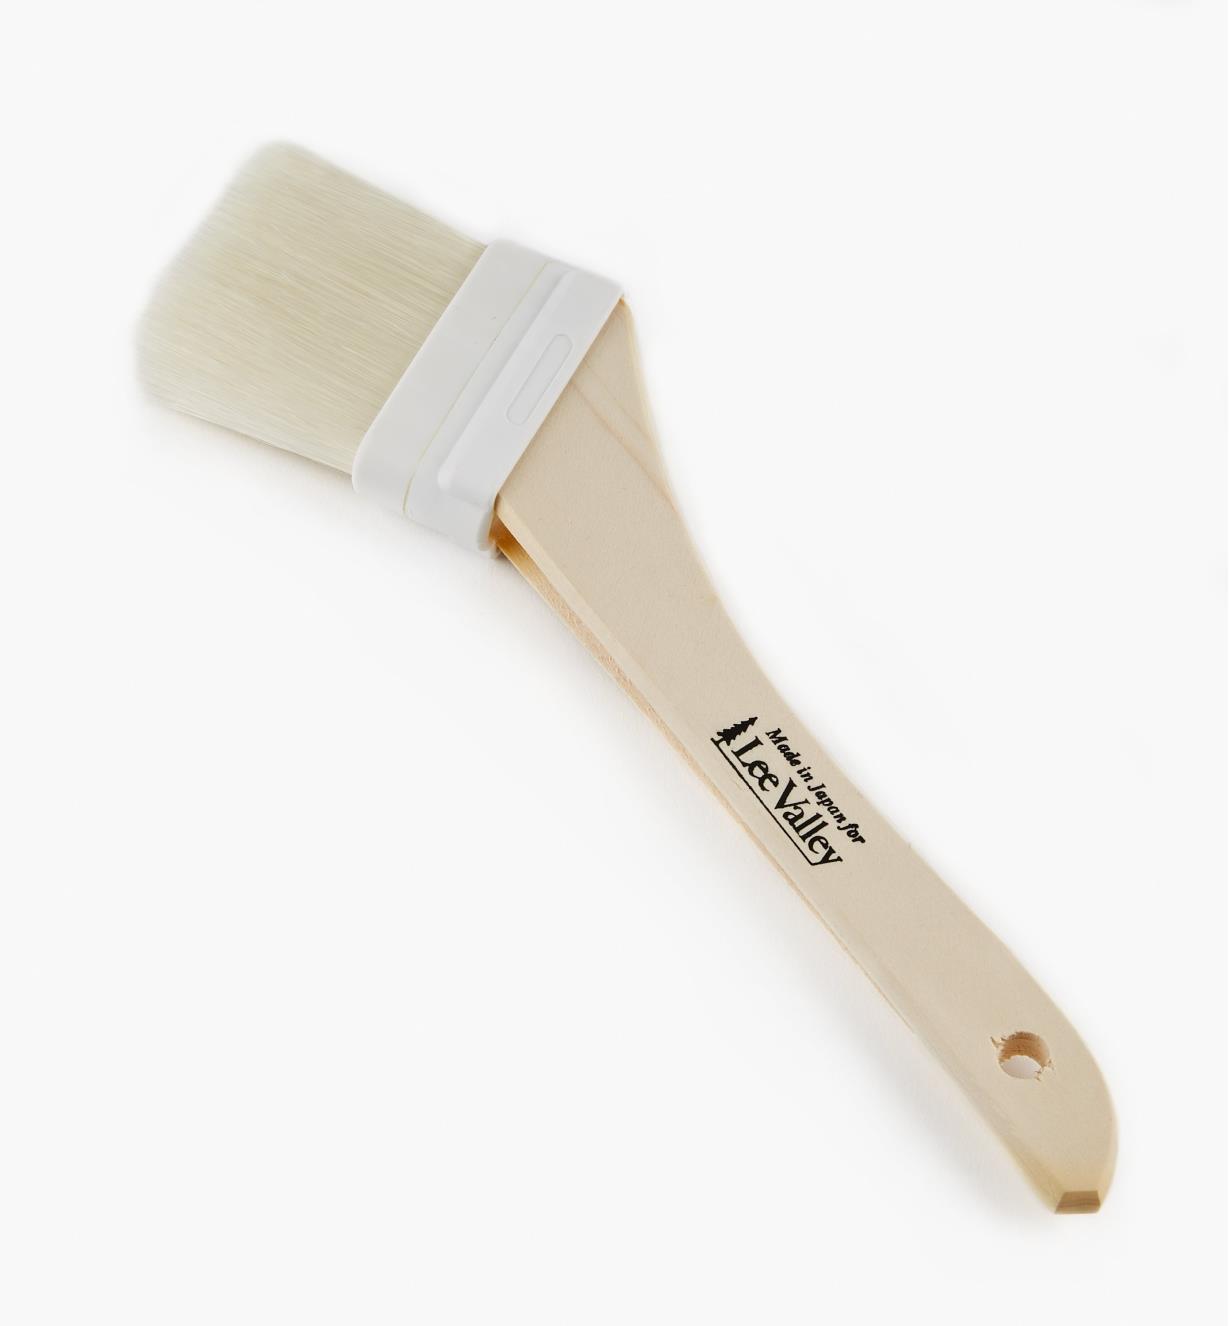 56Z9985 - Japanese Varnish Brush